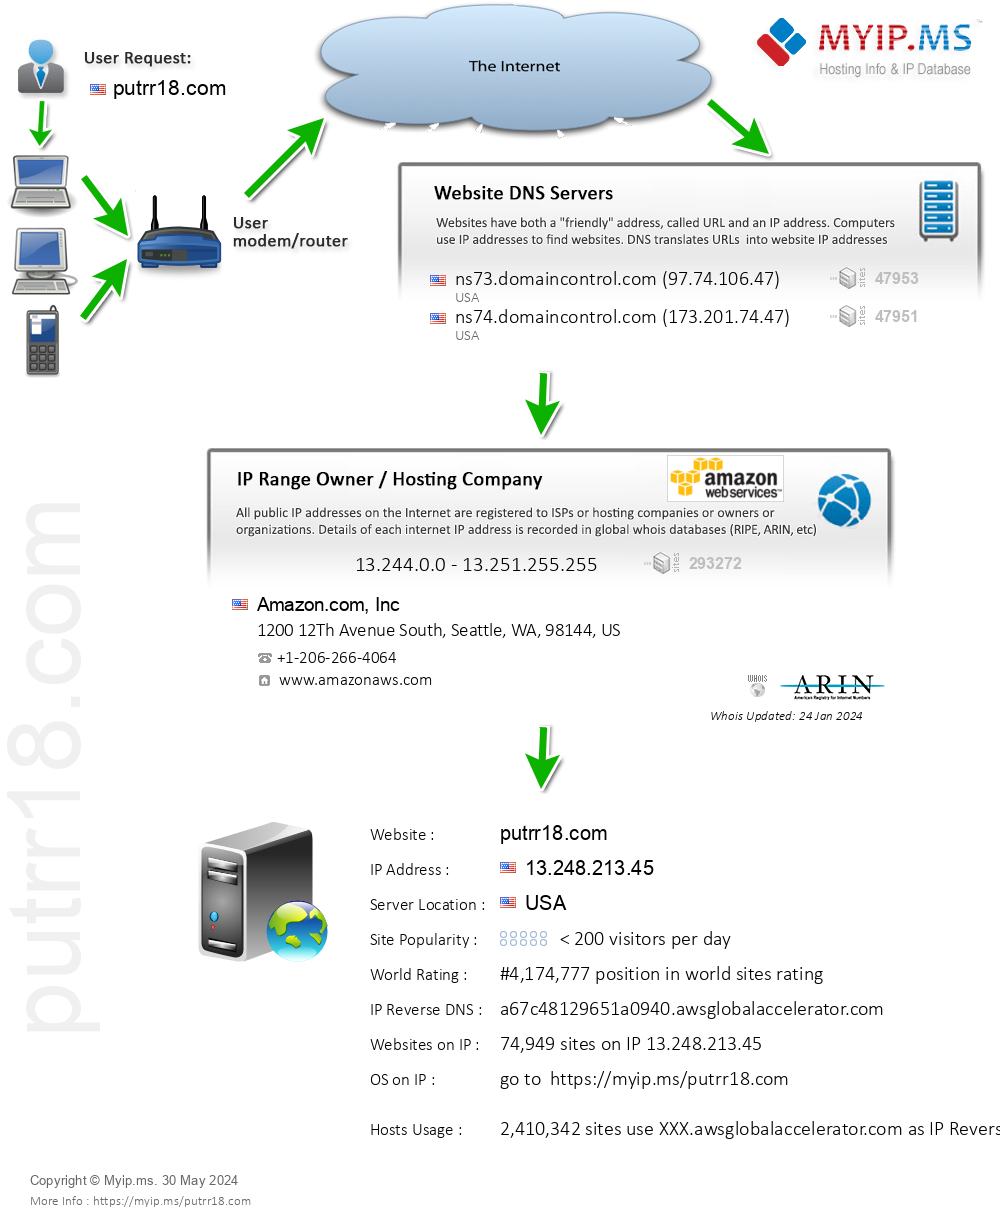 Putrr18.com - Website Hosting Visual IP Diagram